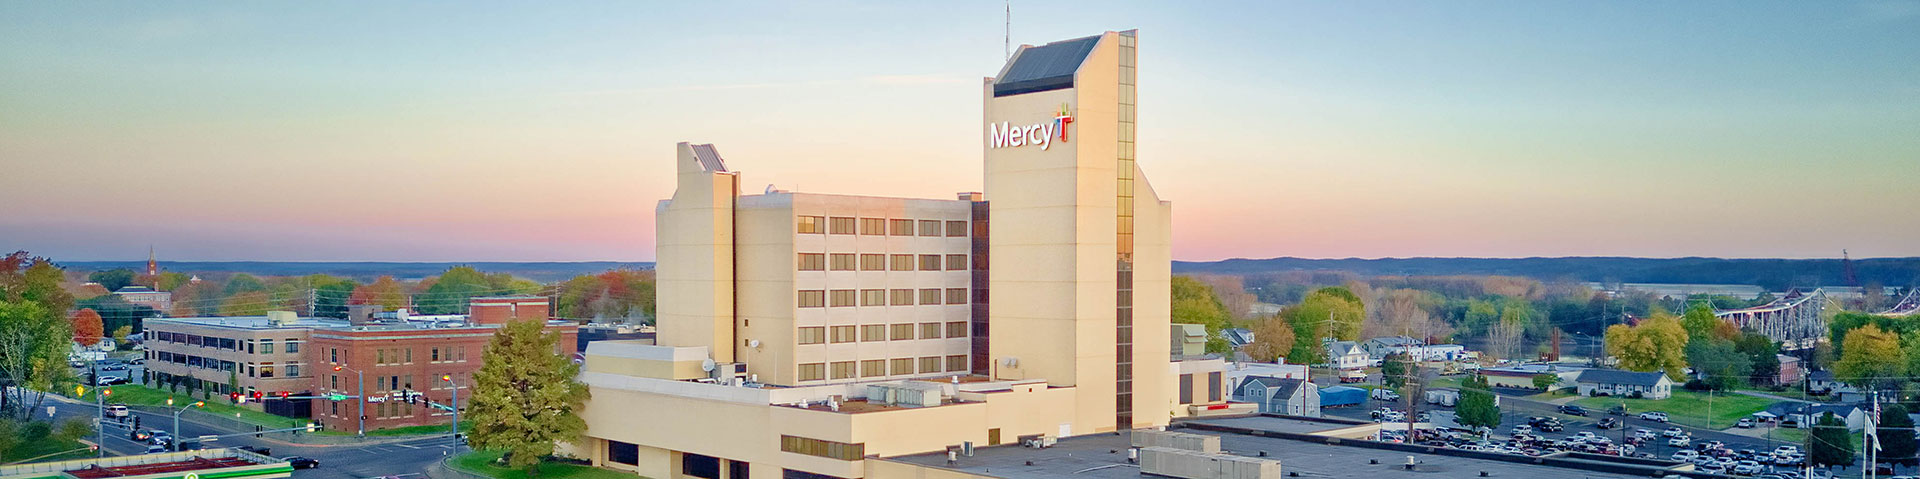 mercy-hospital-washington-hero-image